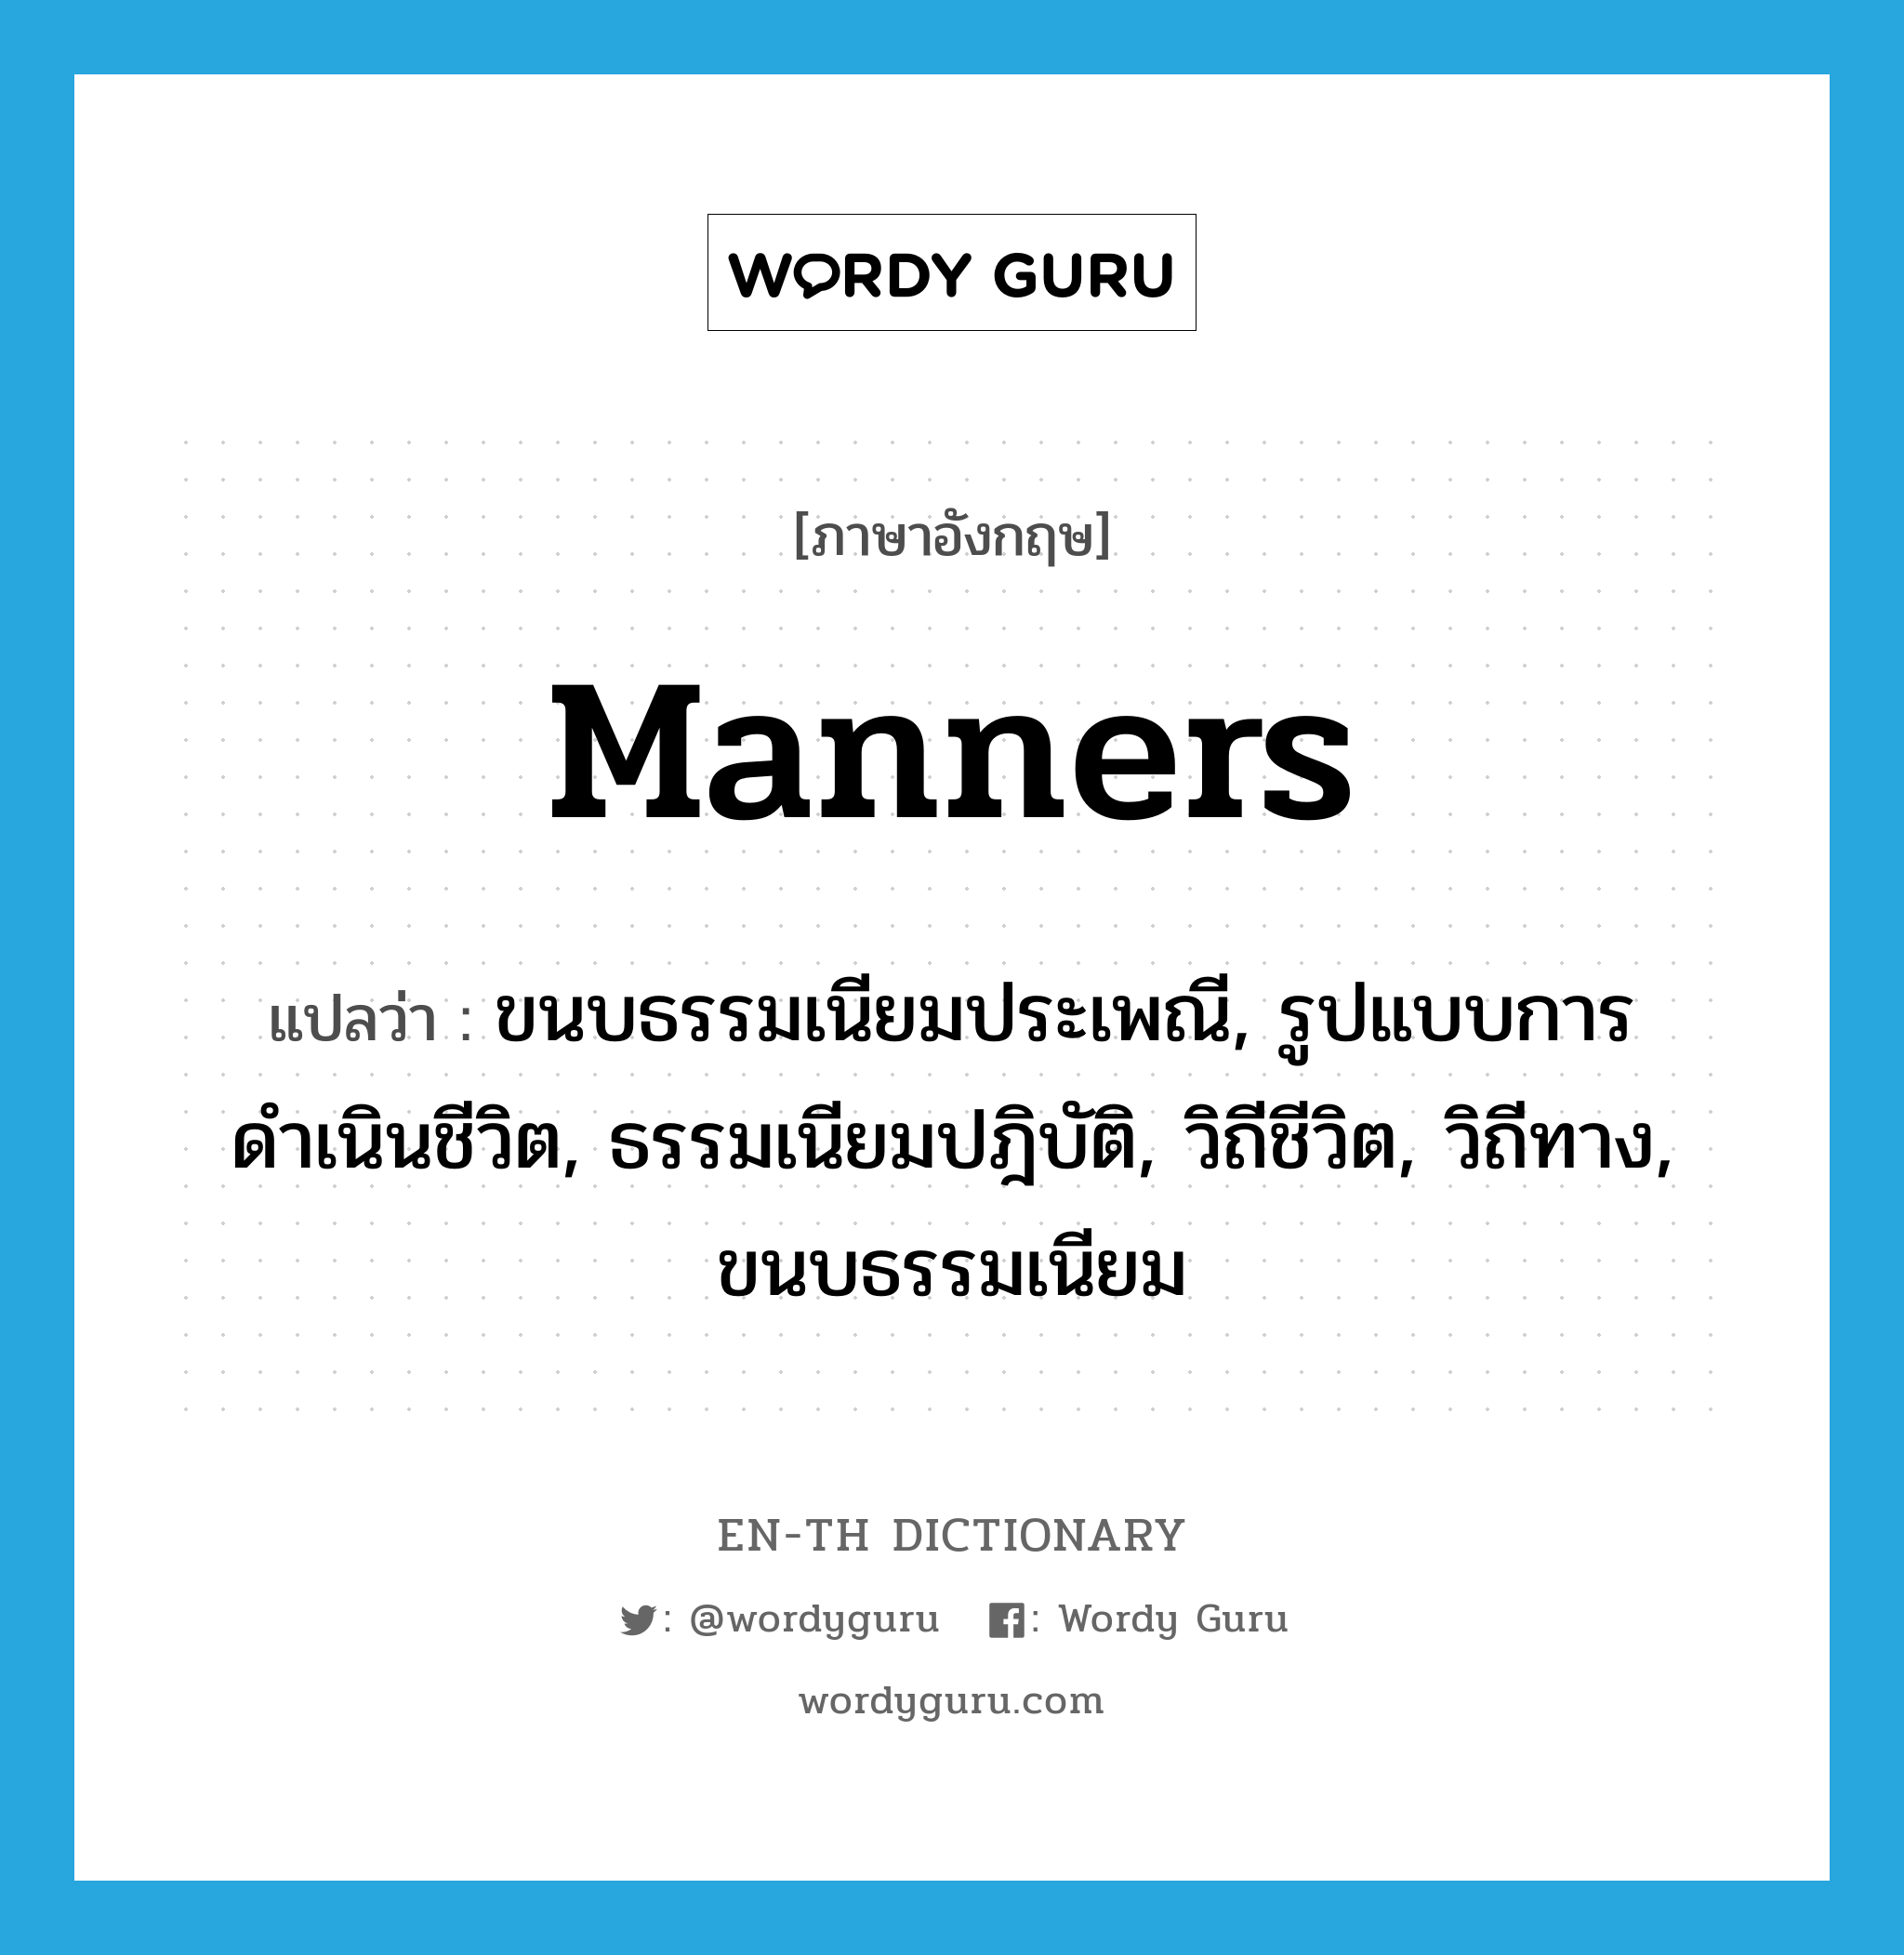 manners แปลว่า?, คำศัพท์ภาษาอังกฤษ manners แปลว่า ขนบธรรมเนียมประเพณี, รูปแบบการดำเนินชีวิต, ธรรมเนียมปฎิบัติ, วิถีชีวิต, วิถีทาง, ขนบธรรมเนียม ประเภท N หมวด N